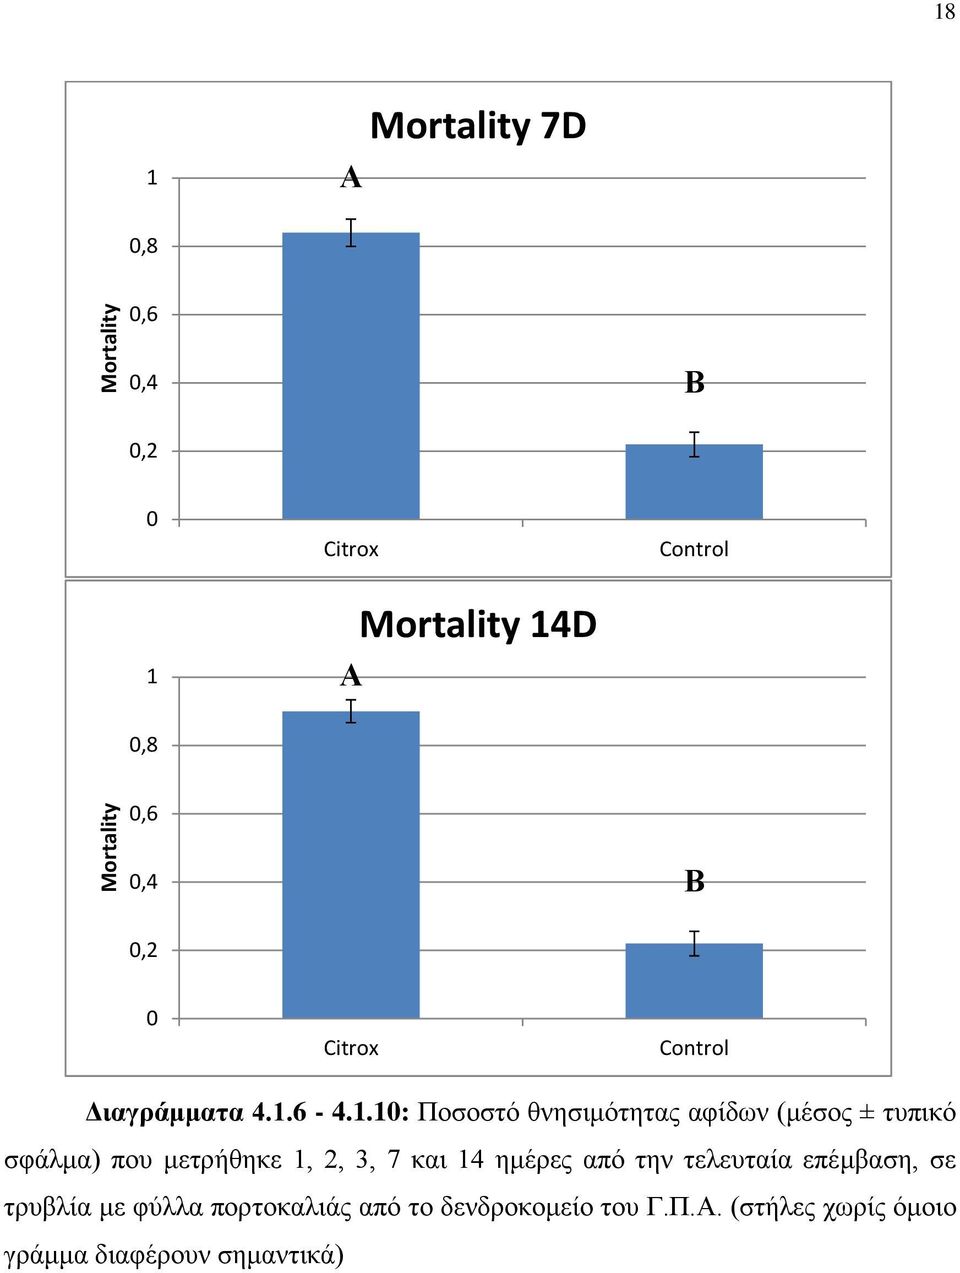 .: Ποσοστό θνησιμότητας αφίδων (μέσος ± τυπικό σφάλμα) που μετρήθηκε, 2, 3, 7 και 4